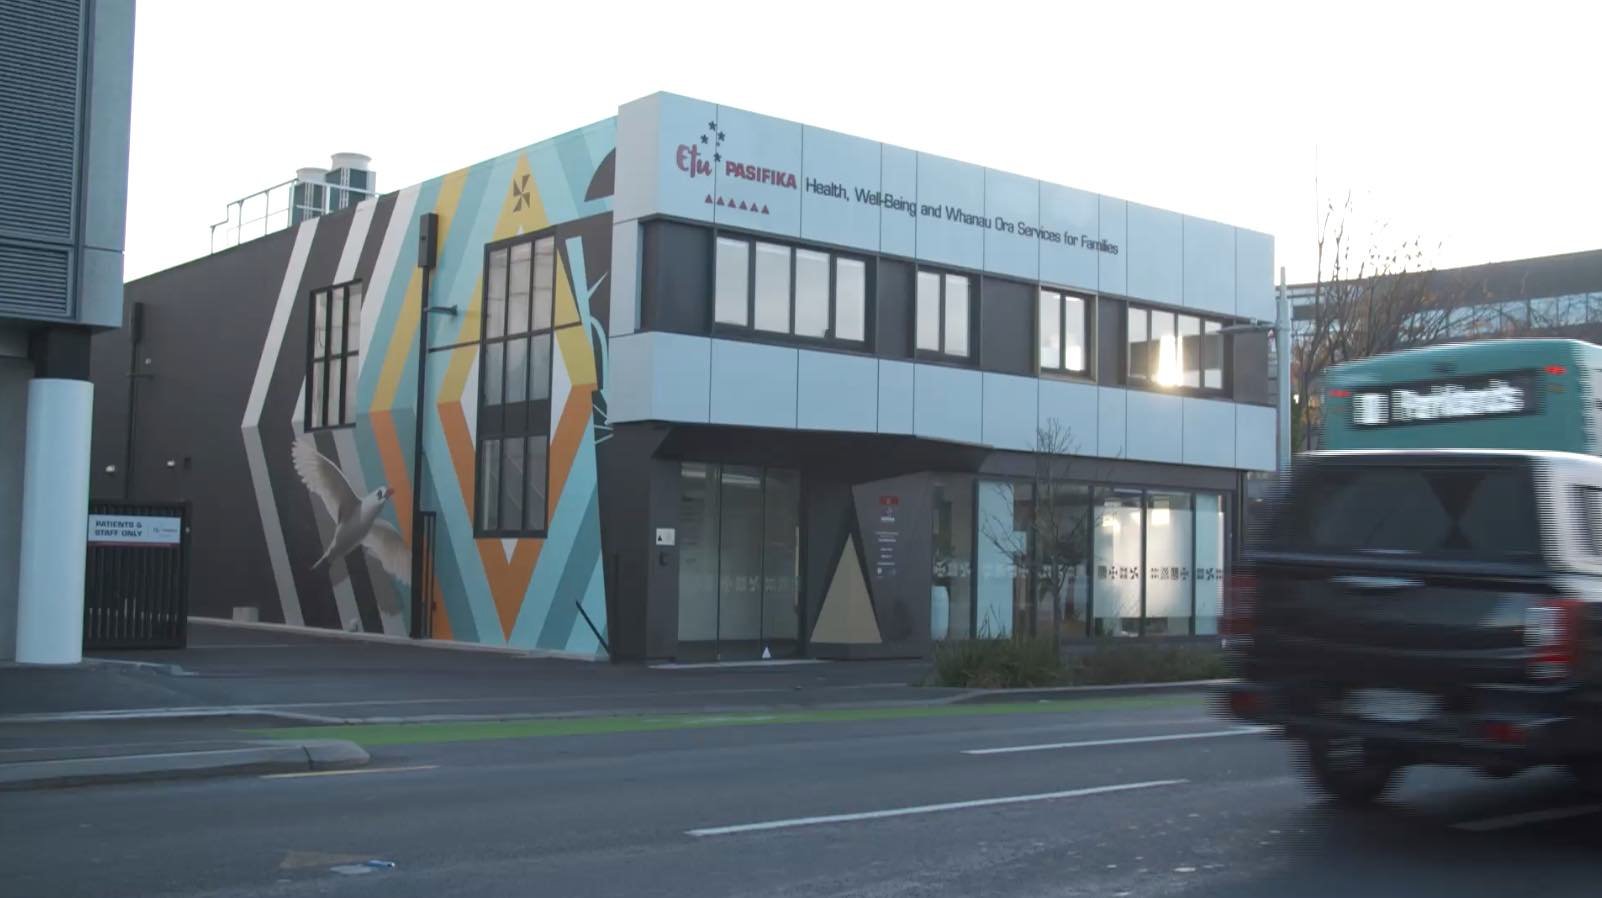 Etu Pasifika Pacific health centre in Christchurch